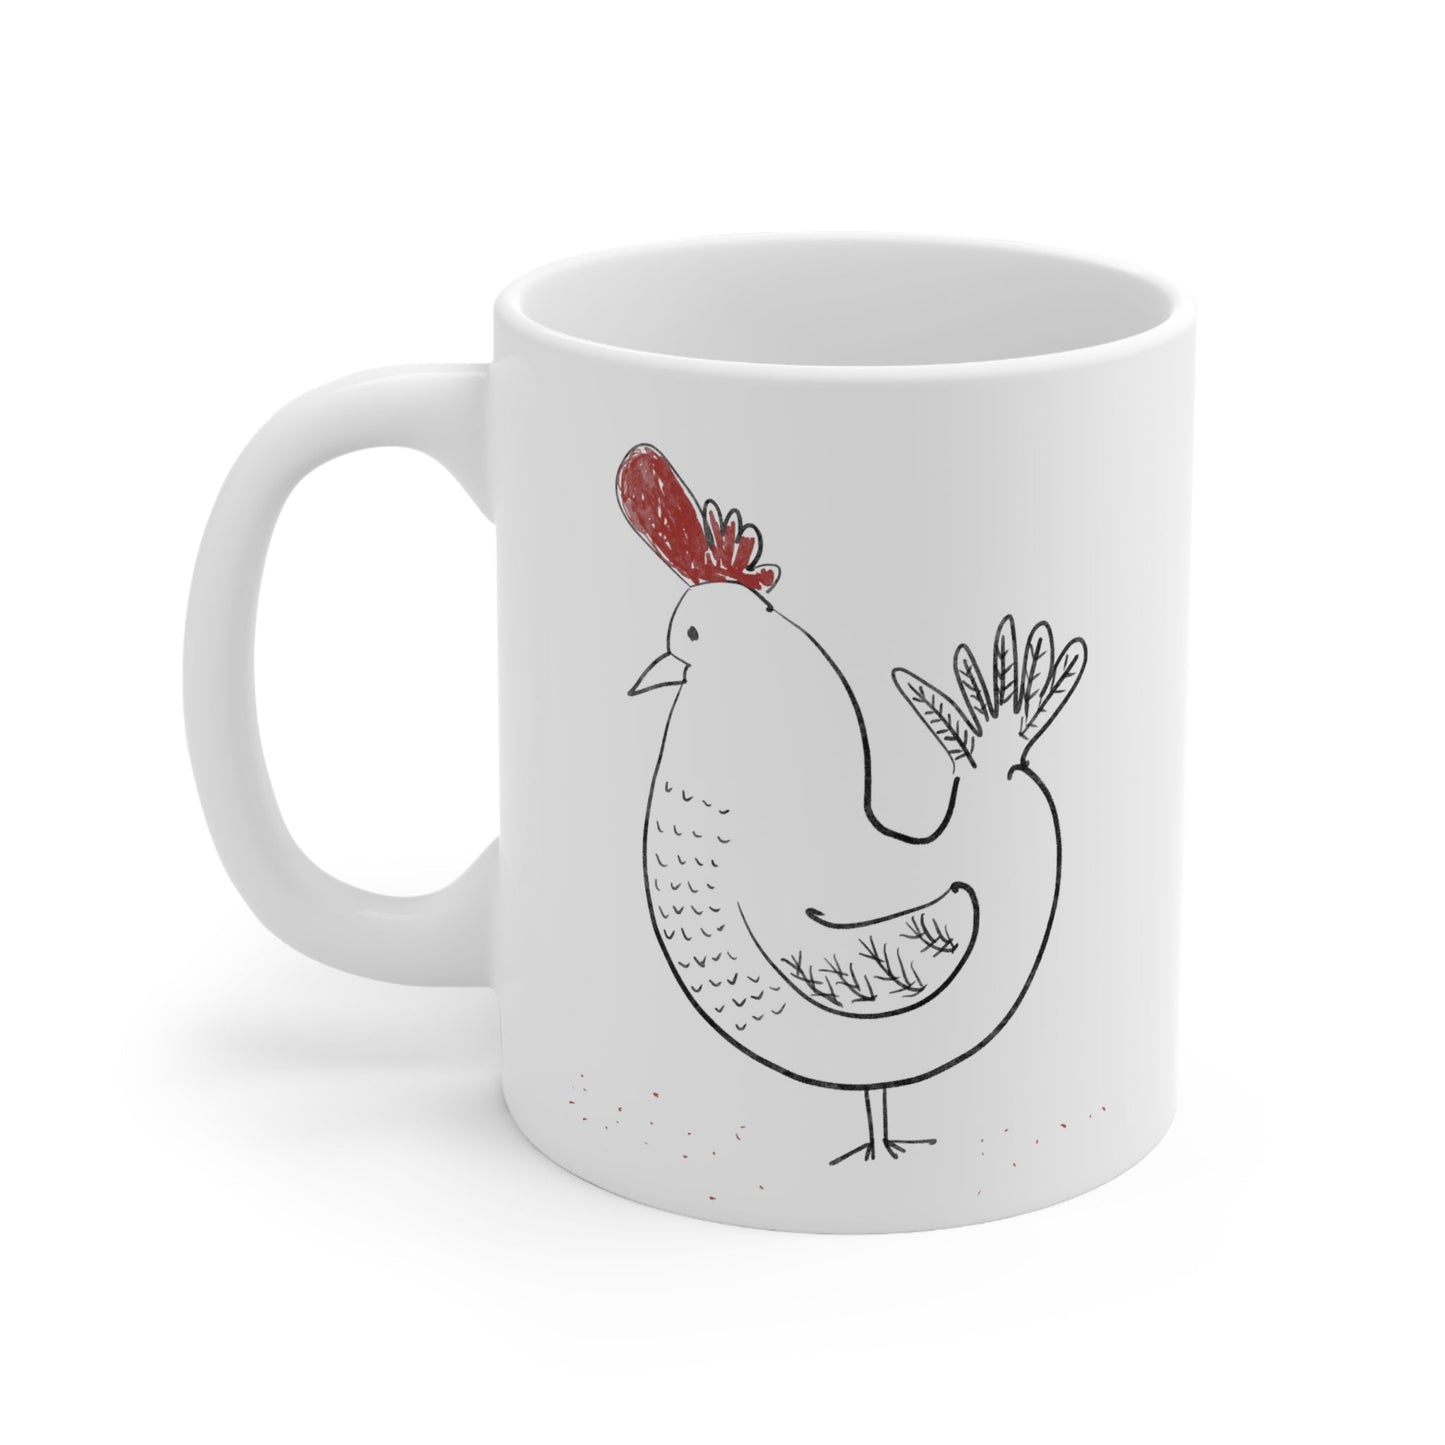 chicken mug - The muggin shop